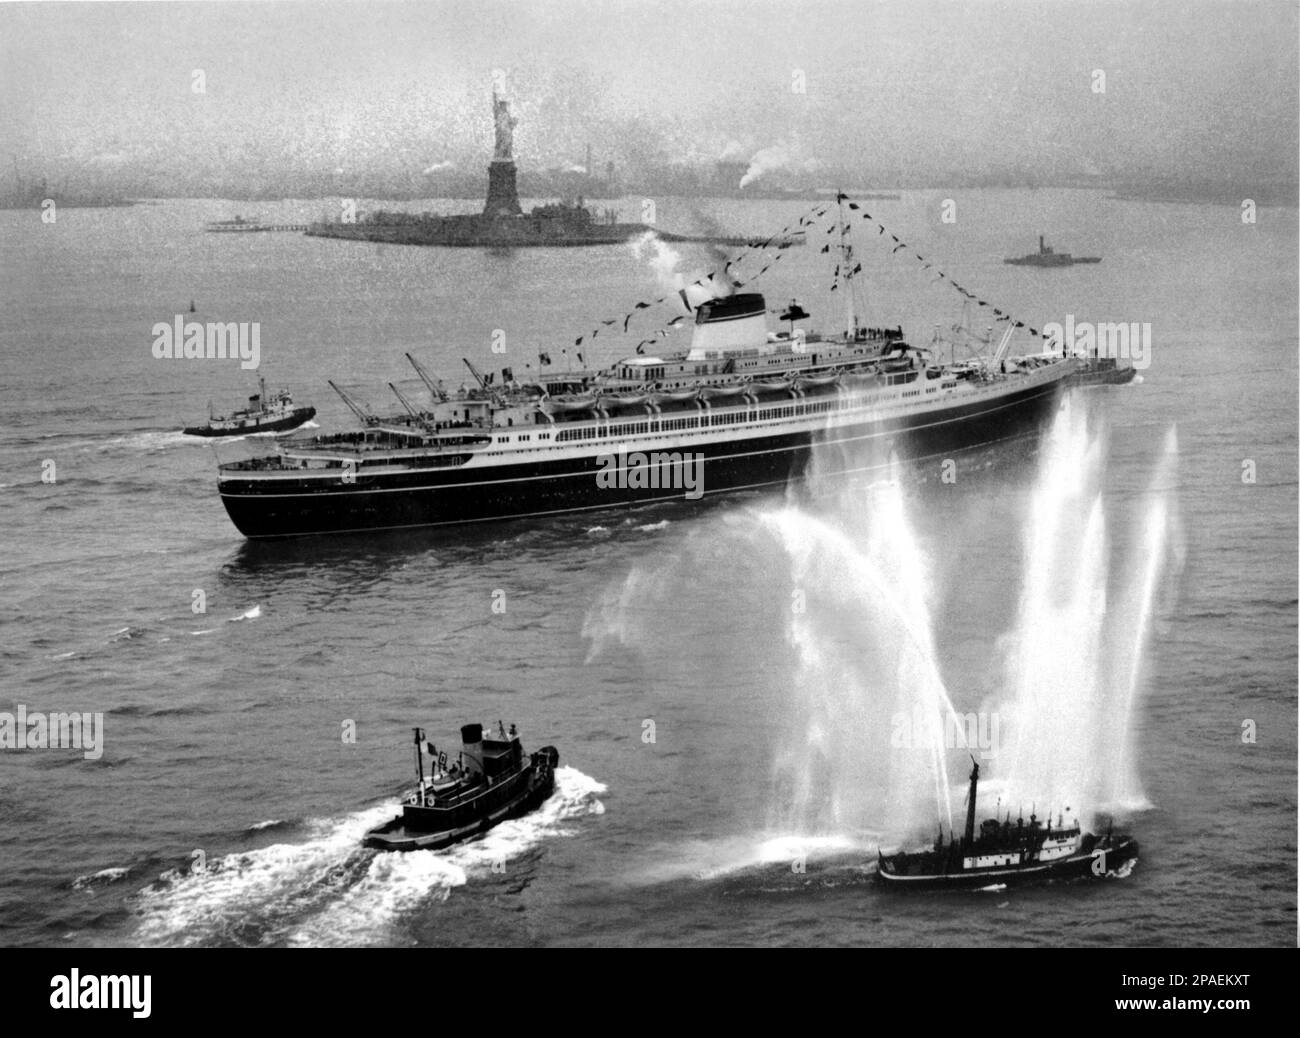 1953 , NEW YORK , USA : die SS Andrea Doria kommt nach der ersten Rekordreise in New York an . Die Andrea Doria war ein Ozeandampfer für die italienische Linie (Societa' di Navigazione Italia), die in Genua, Italien, angetrieben wurde. Benannt nach dem Genoesischen Admiral Andrea Doria aus dem 16. Jahrhundert. Am 16. Juni 1951 startete das Schiff am 14. Januar 1953 auf Jungfernfahrt. Am 25. Juli 1956 stieß die Andrea Doria vor der Küste von Nantucket, Massachusetts, auf dem Weg nach New York City mit der SS Stockholm in Richtung Osten der Schwedisch-amerikanischen Linie in einer Zeit zusammen, die zu einer der geschichtsträchtigsten wurde Stockfoto